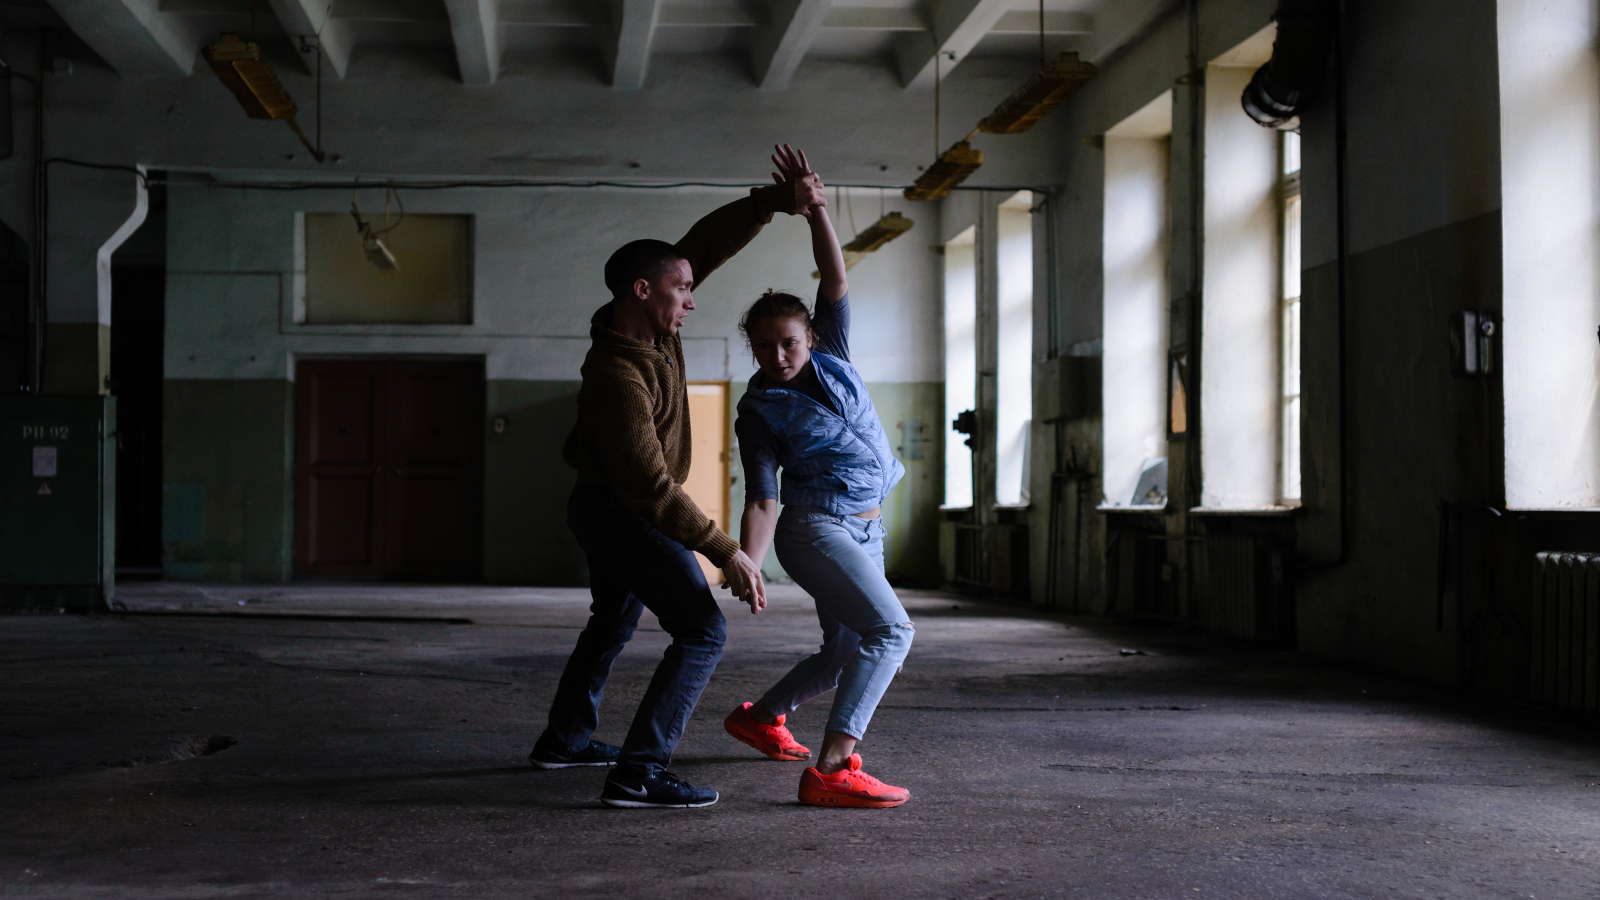 Time Subjectives in Objective Time-elokuva on valmistunut 2017 yhteistyössä venäläisen tanssiryhmä ZONK’A:n ja kuvajaa Antti Ahokoivun kanssa.